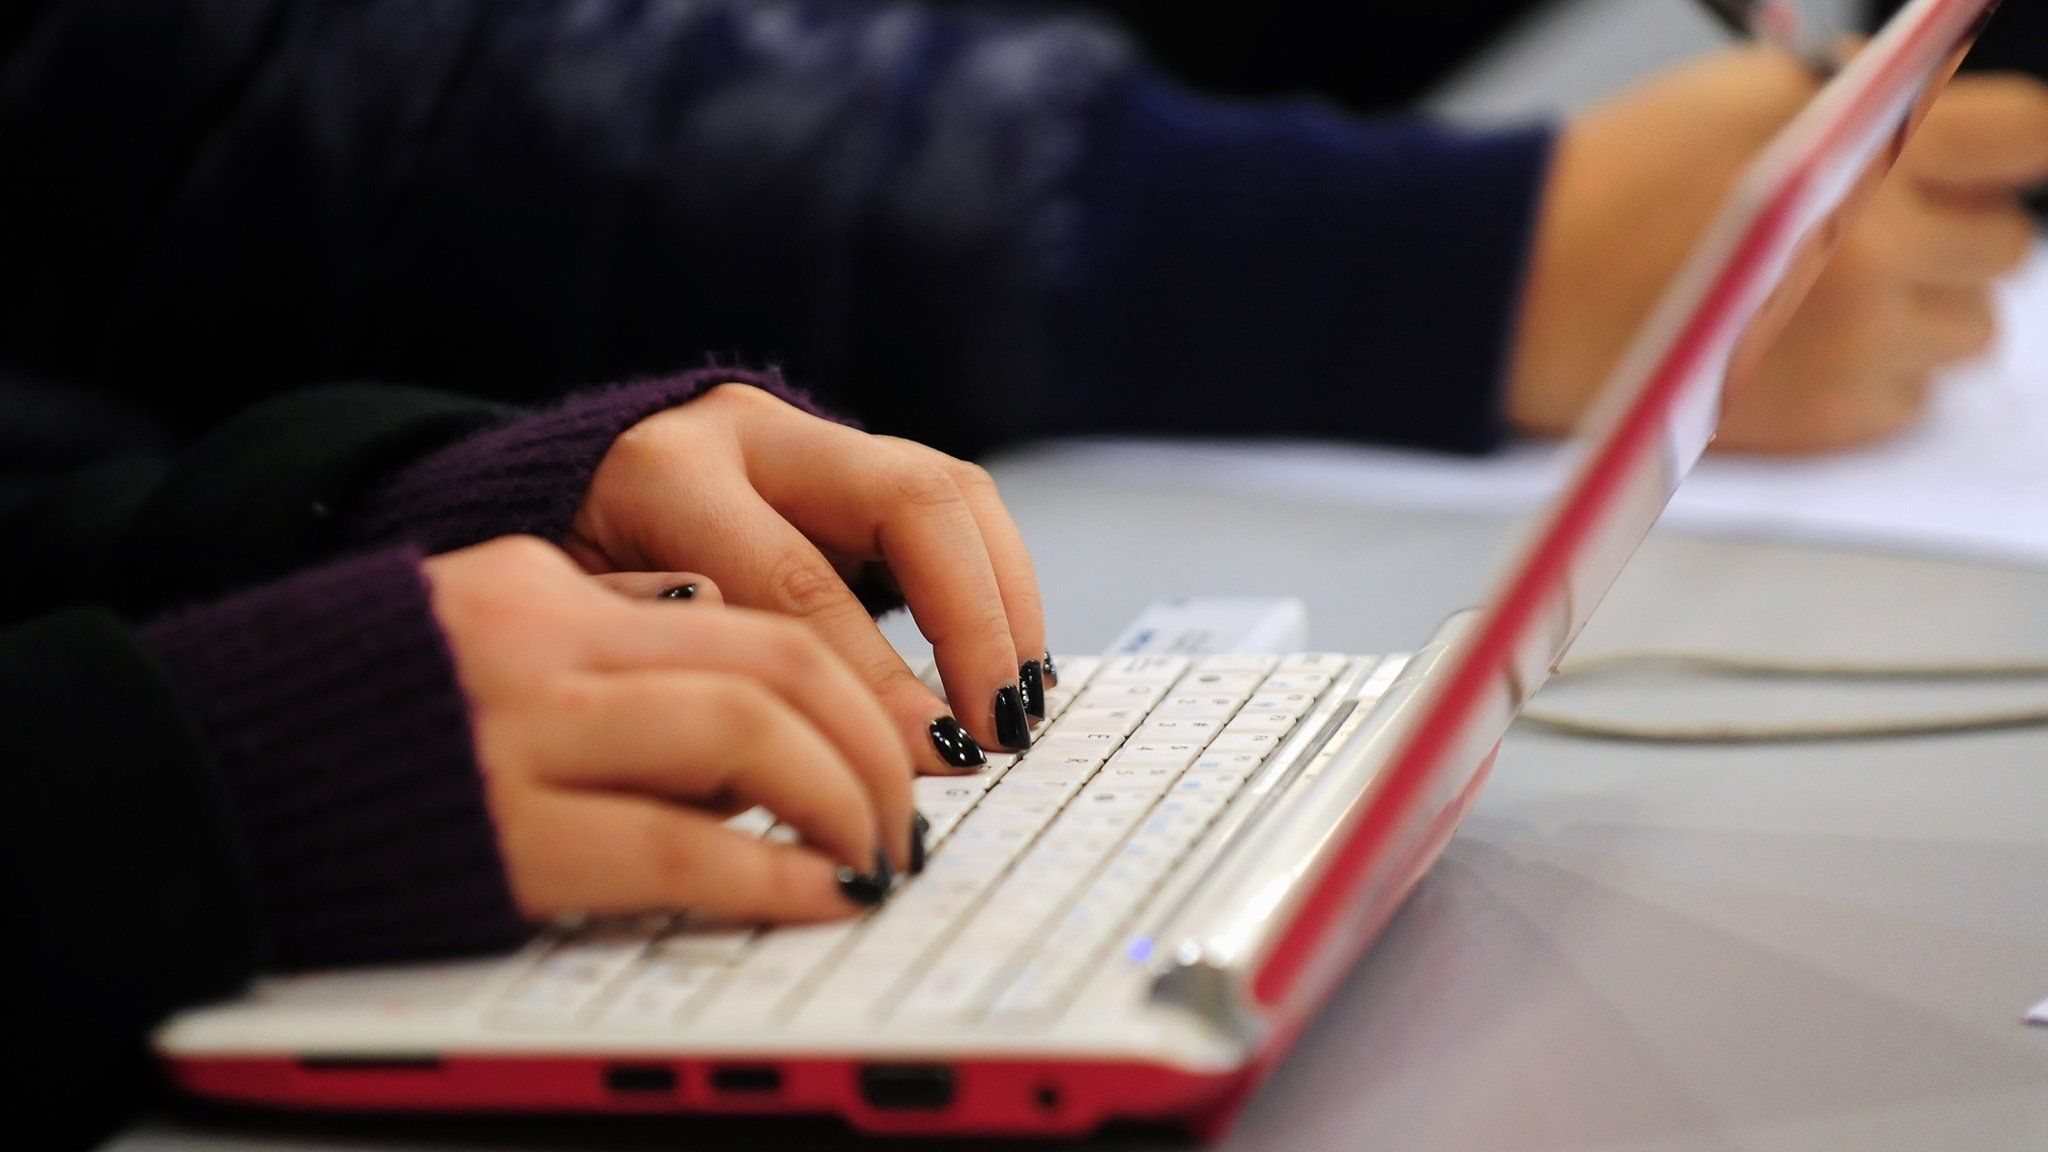 Woman's hands tying on laptop keyboard